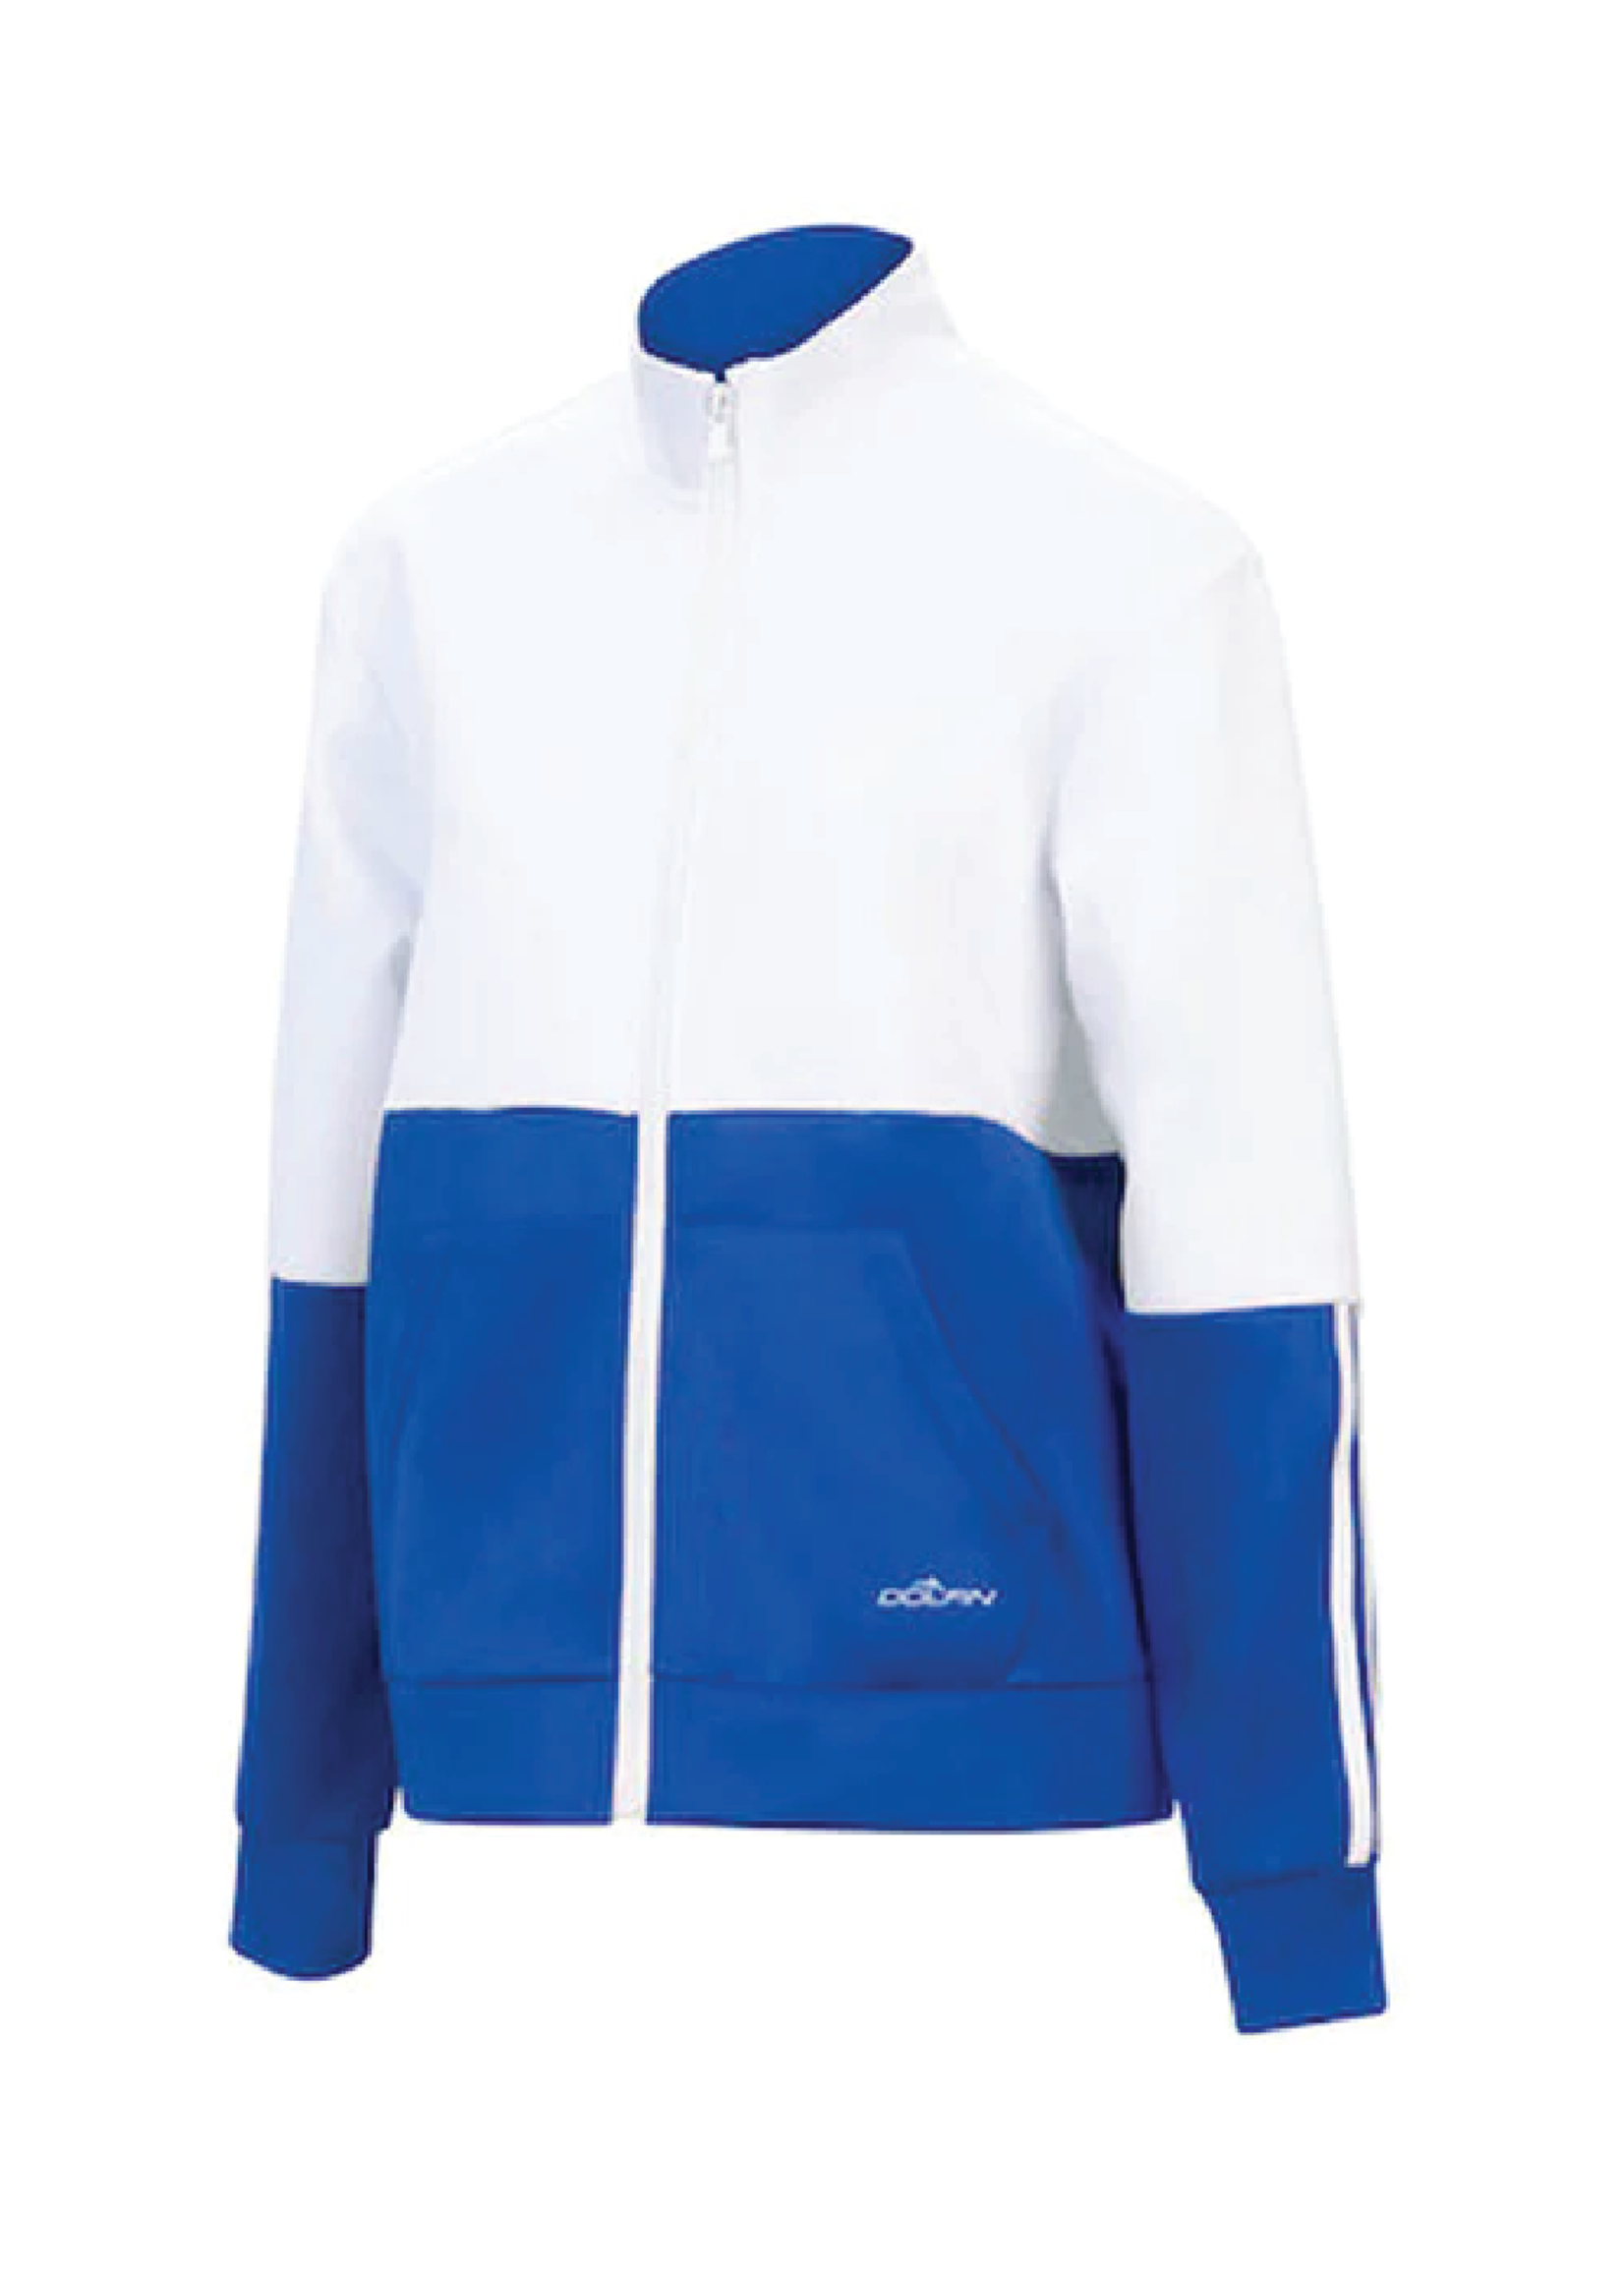 Unisex Color Block Warm Up Jacket WB3 Royal/White